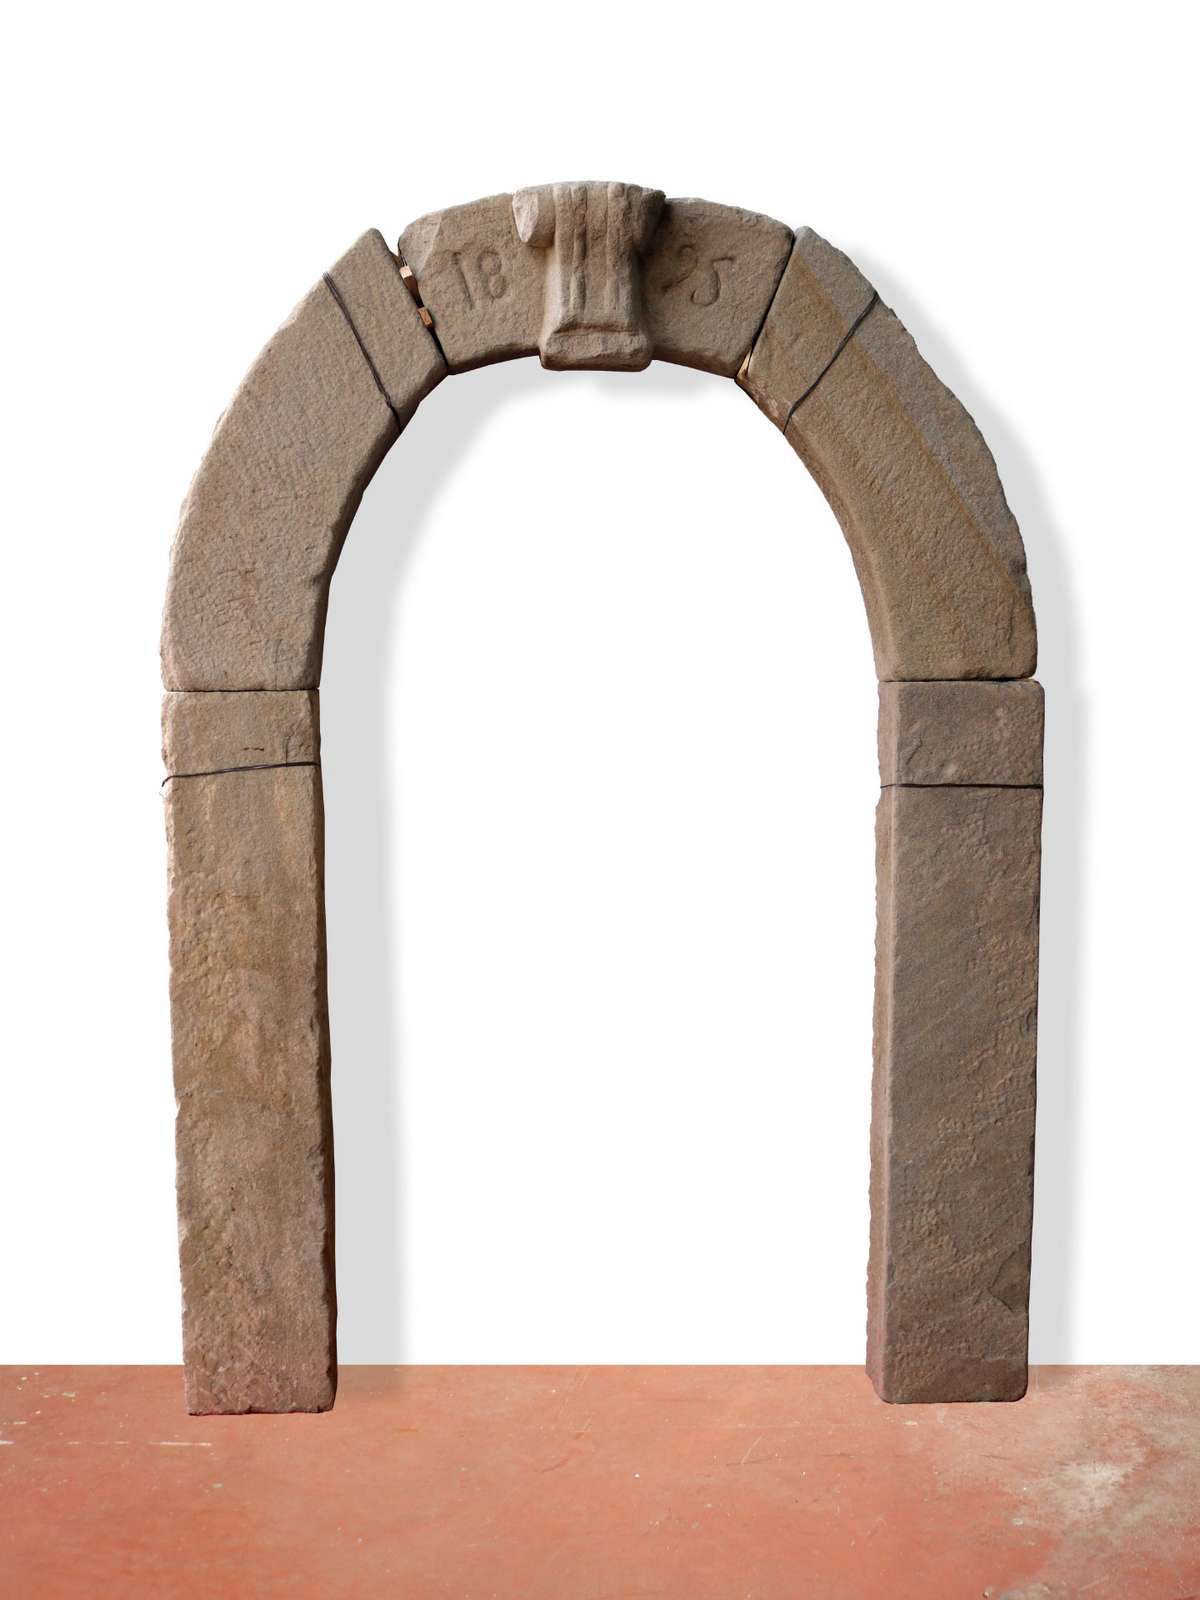 Antico portale in pietra datato 1895. - 1